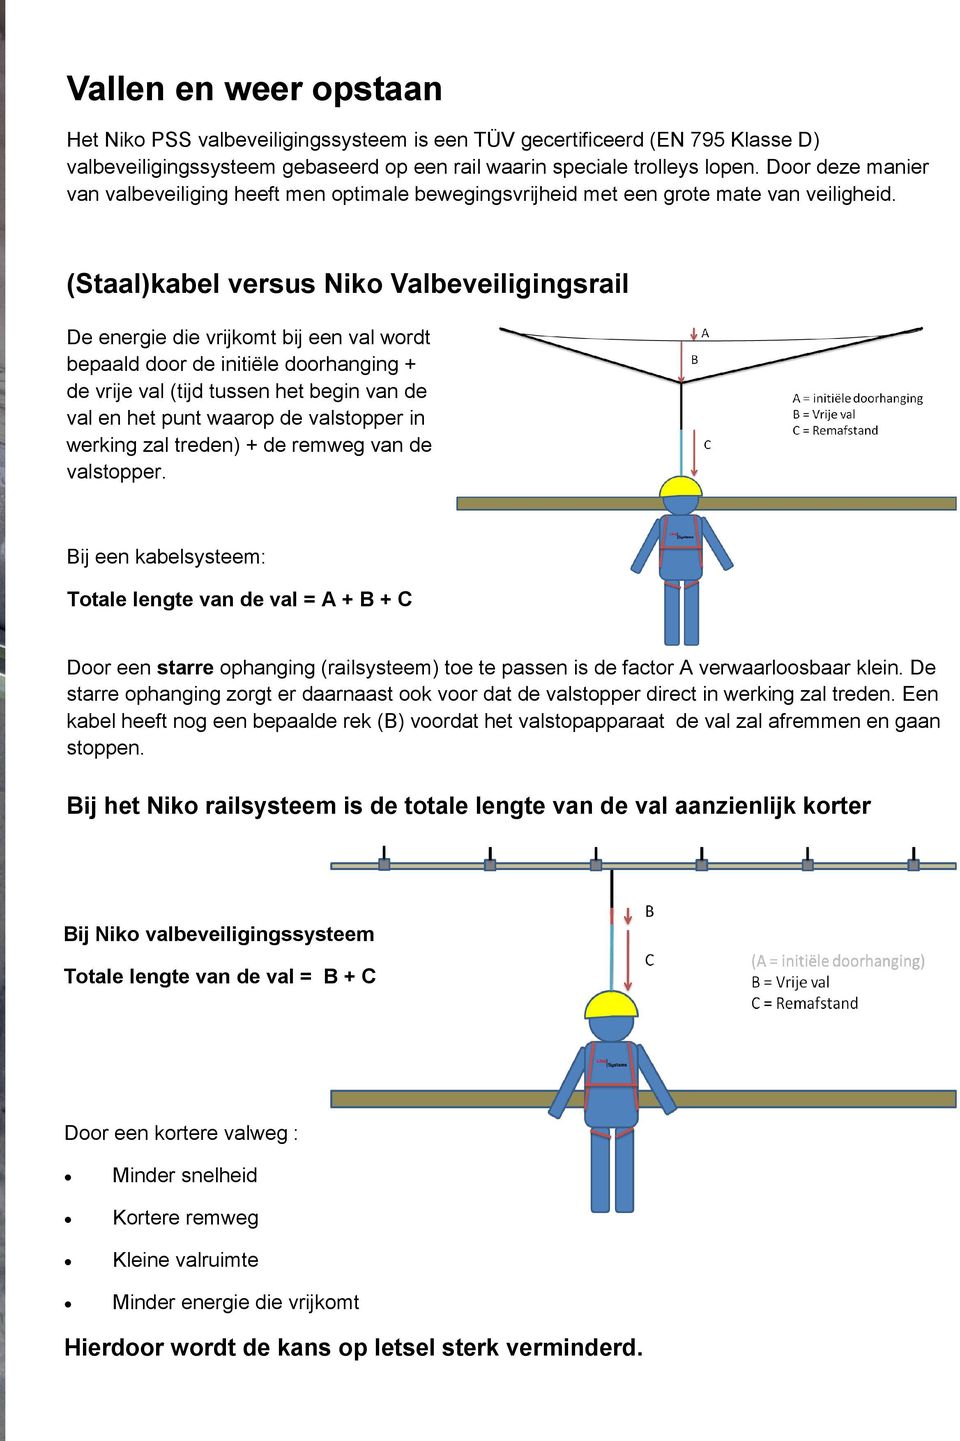 (Staal)kabel versus Niko Valbeveiligingsrail De energie die vrijkomt bij een val wordt bepaald door de initiële doorhanging + de vrije val (tijd tussen het begin van de val en het punt waarop de